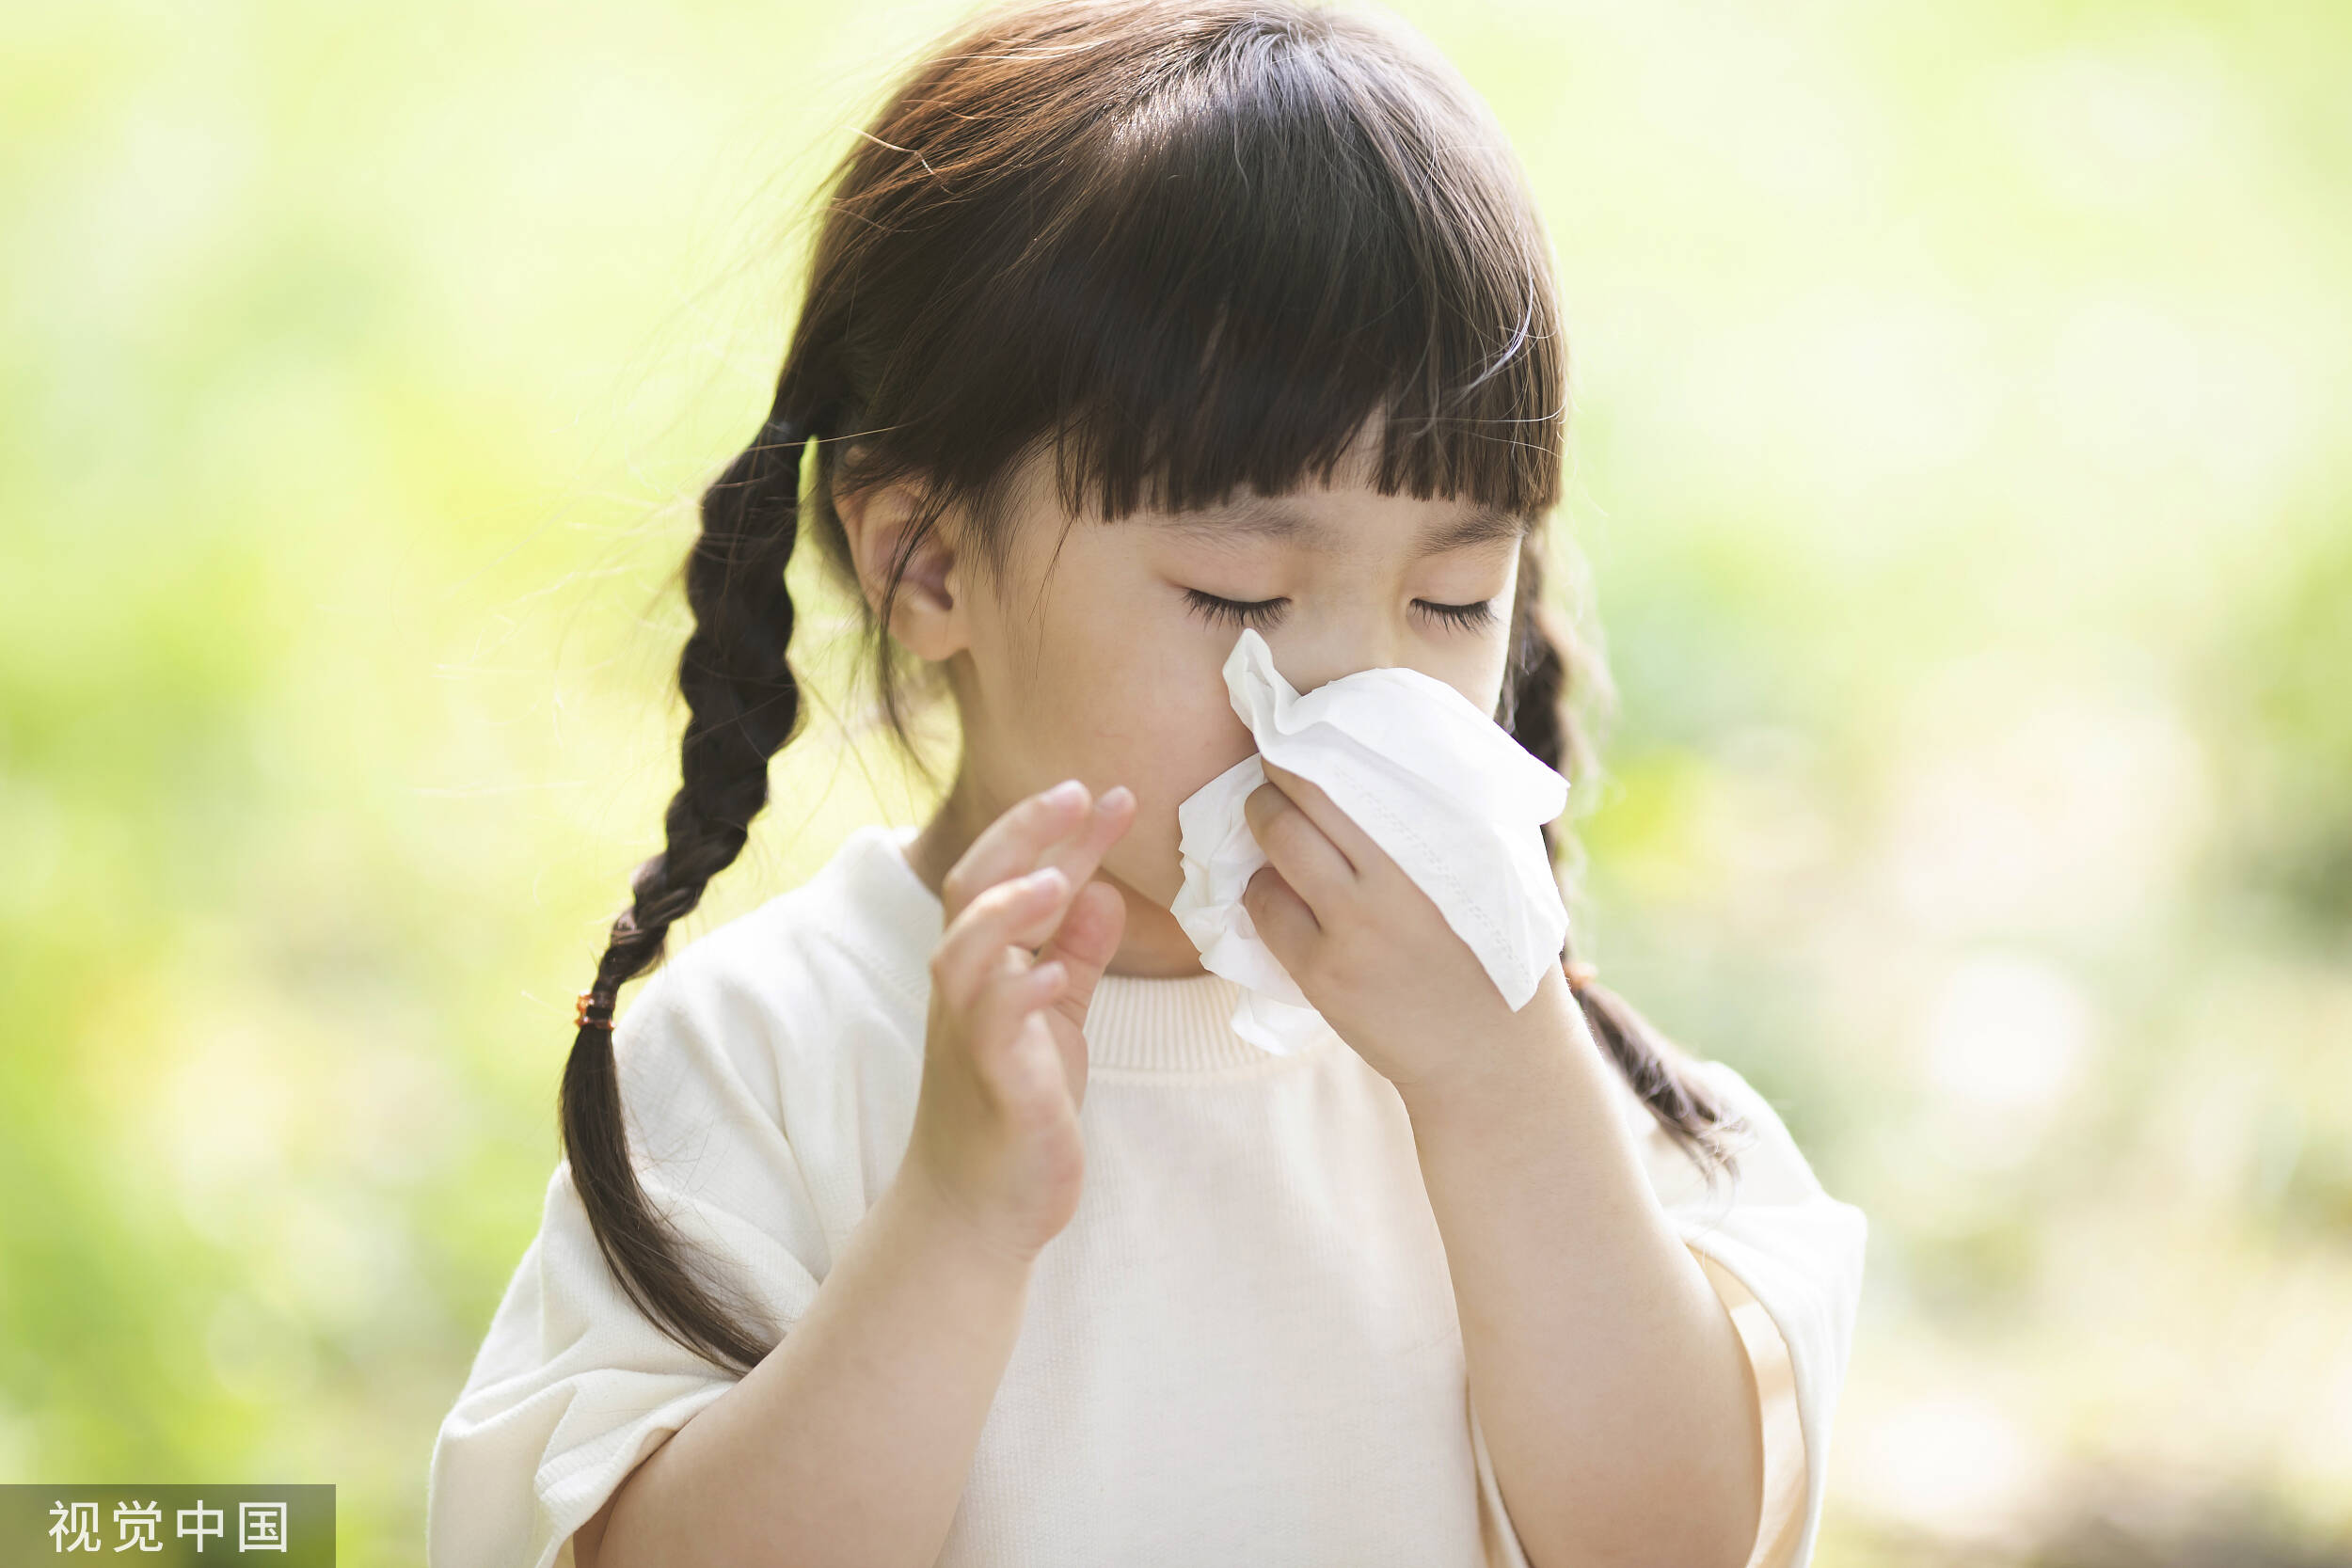 鼻腔给药或能更好防治呼吸道感染